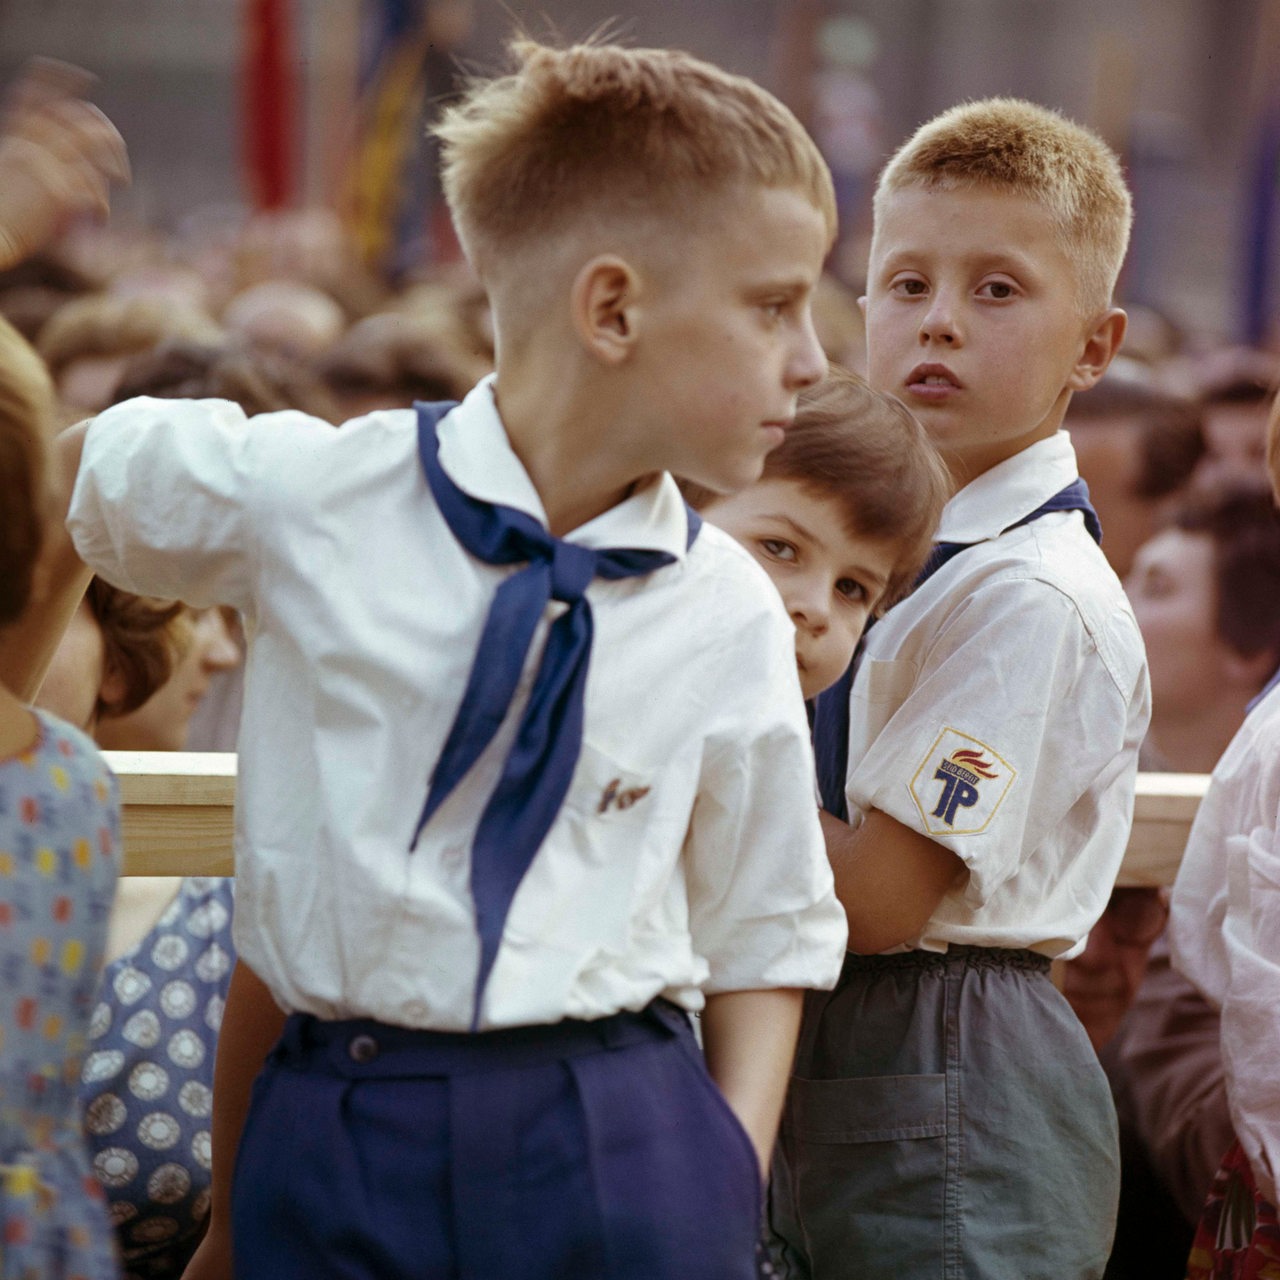 Zwei kleine Jungs in der Uniform der "Jungen Pioniere", 60er Jahre in der DDR